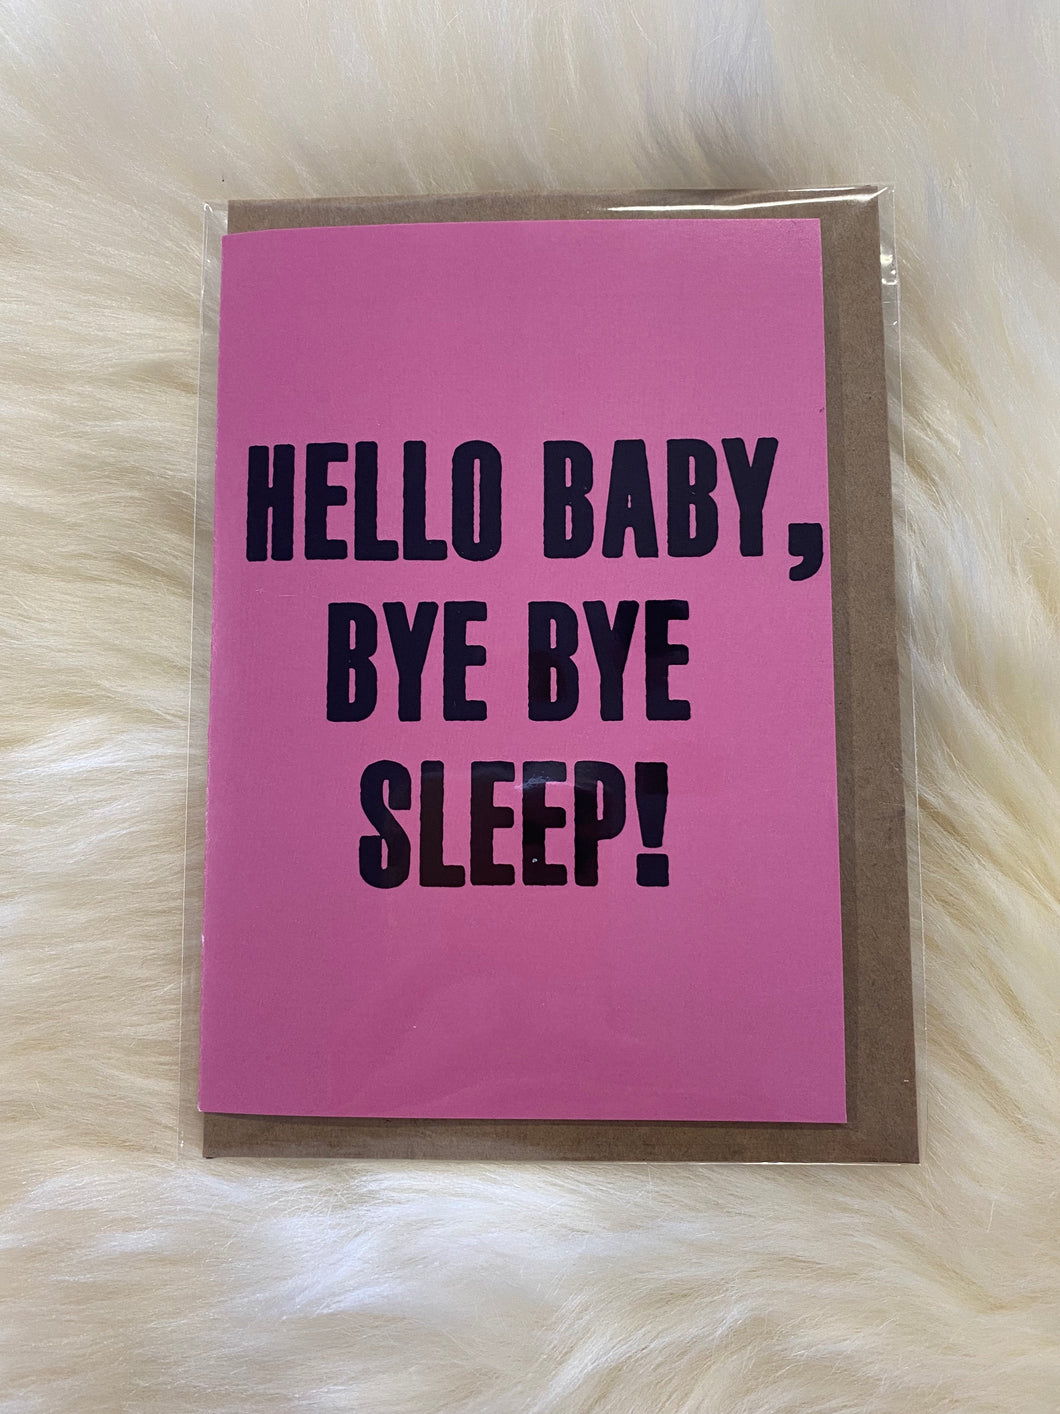 Hello Baby, Bye Bye Sleep!